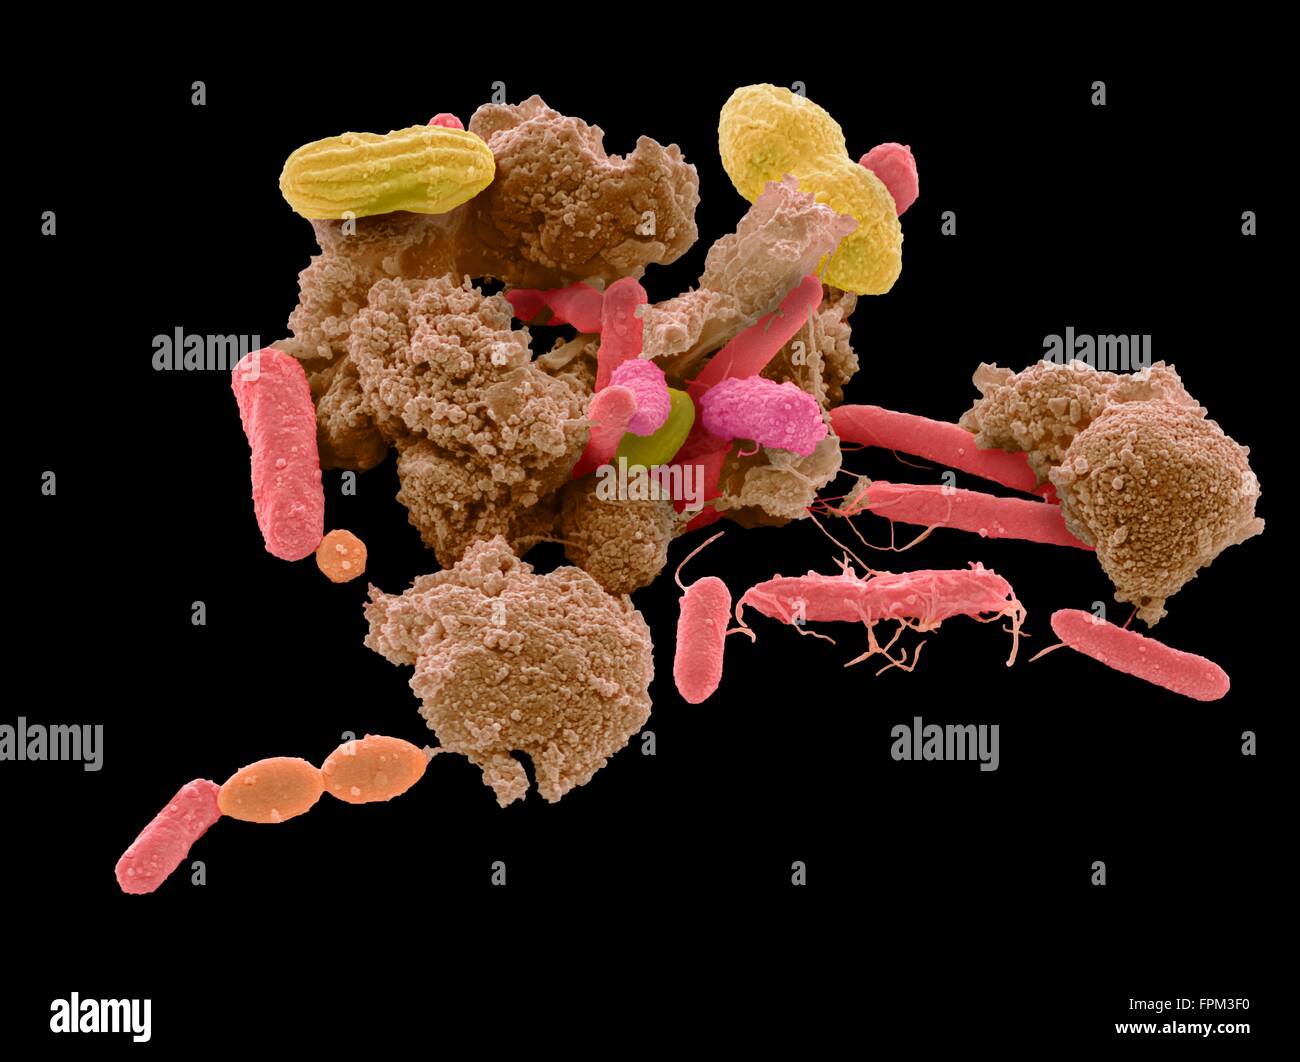 Fecal bacteria immagini e fotografie stock ad alta risoluzione - Alamy